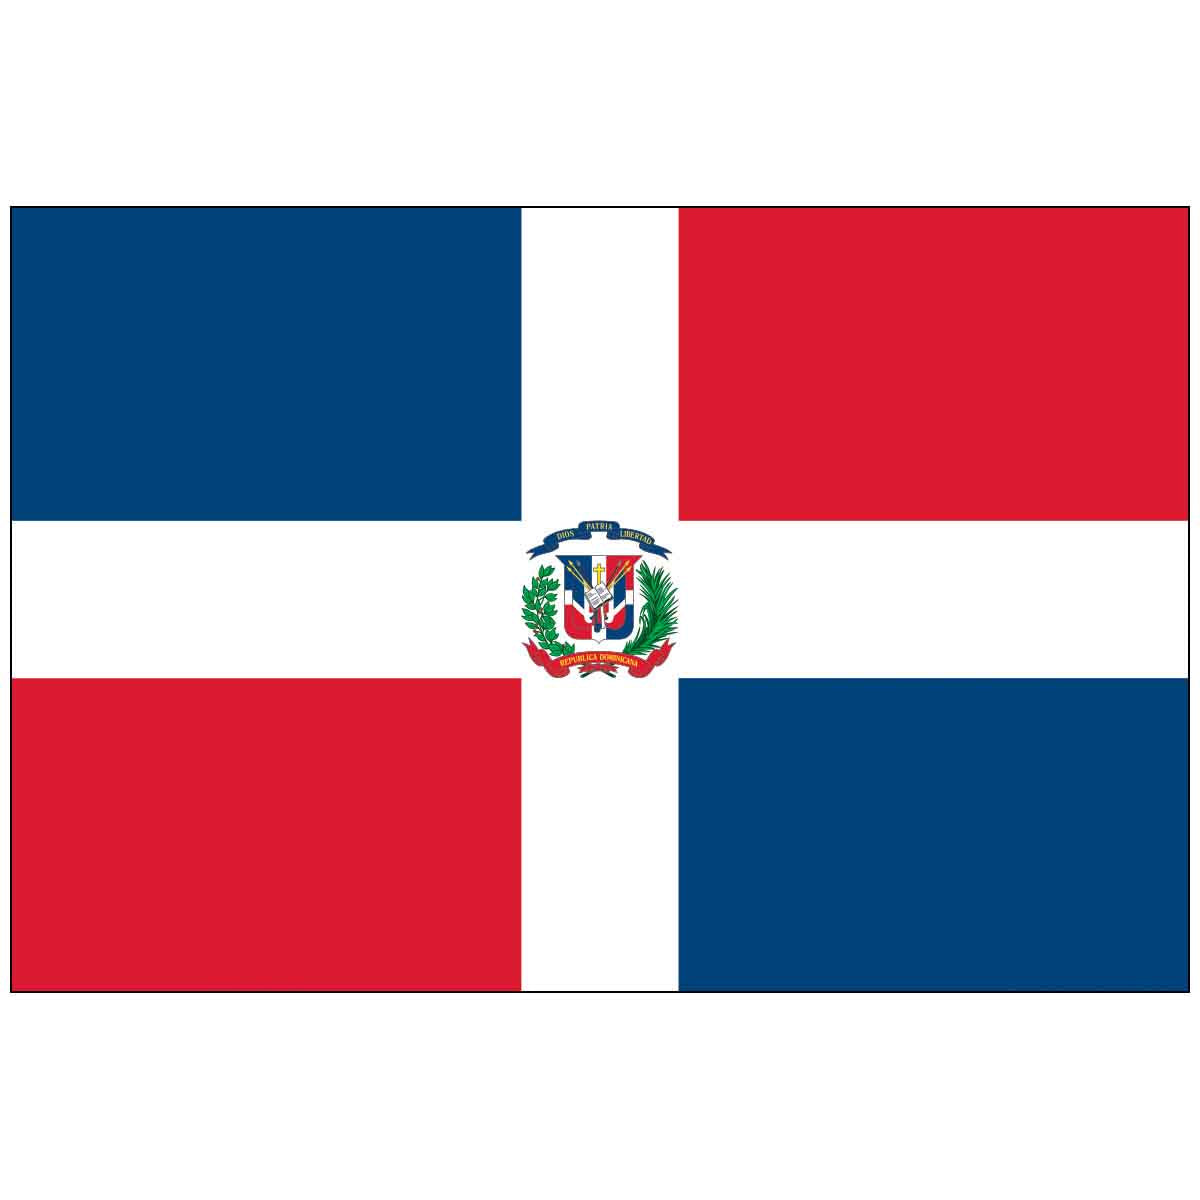 3' x 5' Dominican Republic with Seal (UN/OAS) World Flag - e-poly